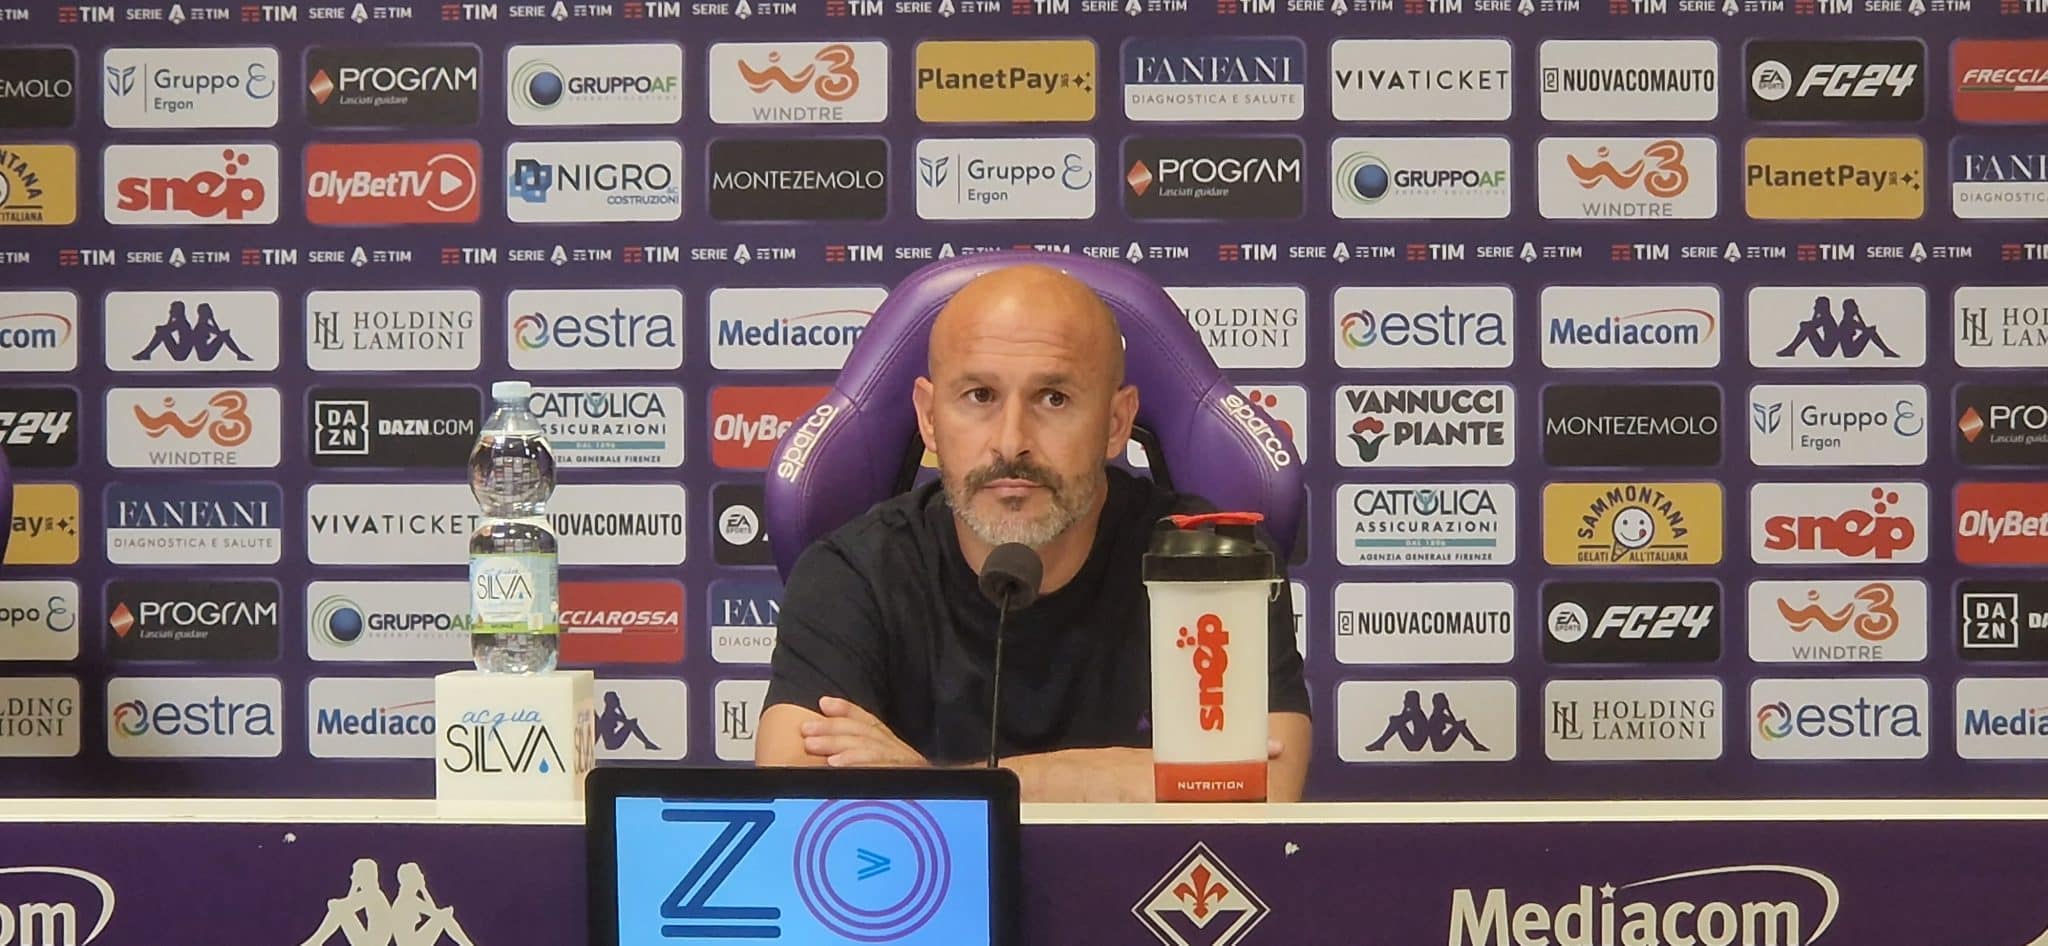 La Fiorentina va avanti in Conference, Italiano: "Fatto la partita che dovevamo fare"